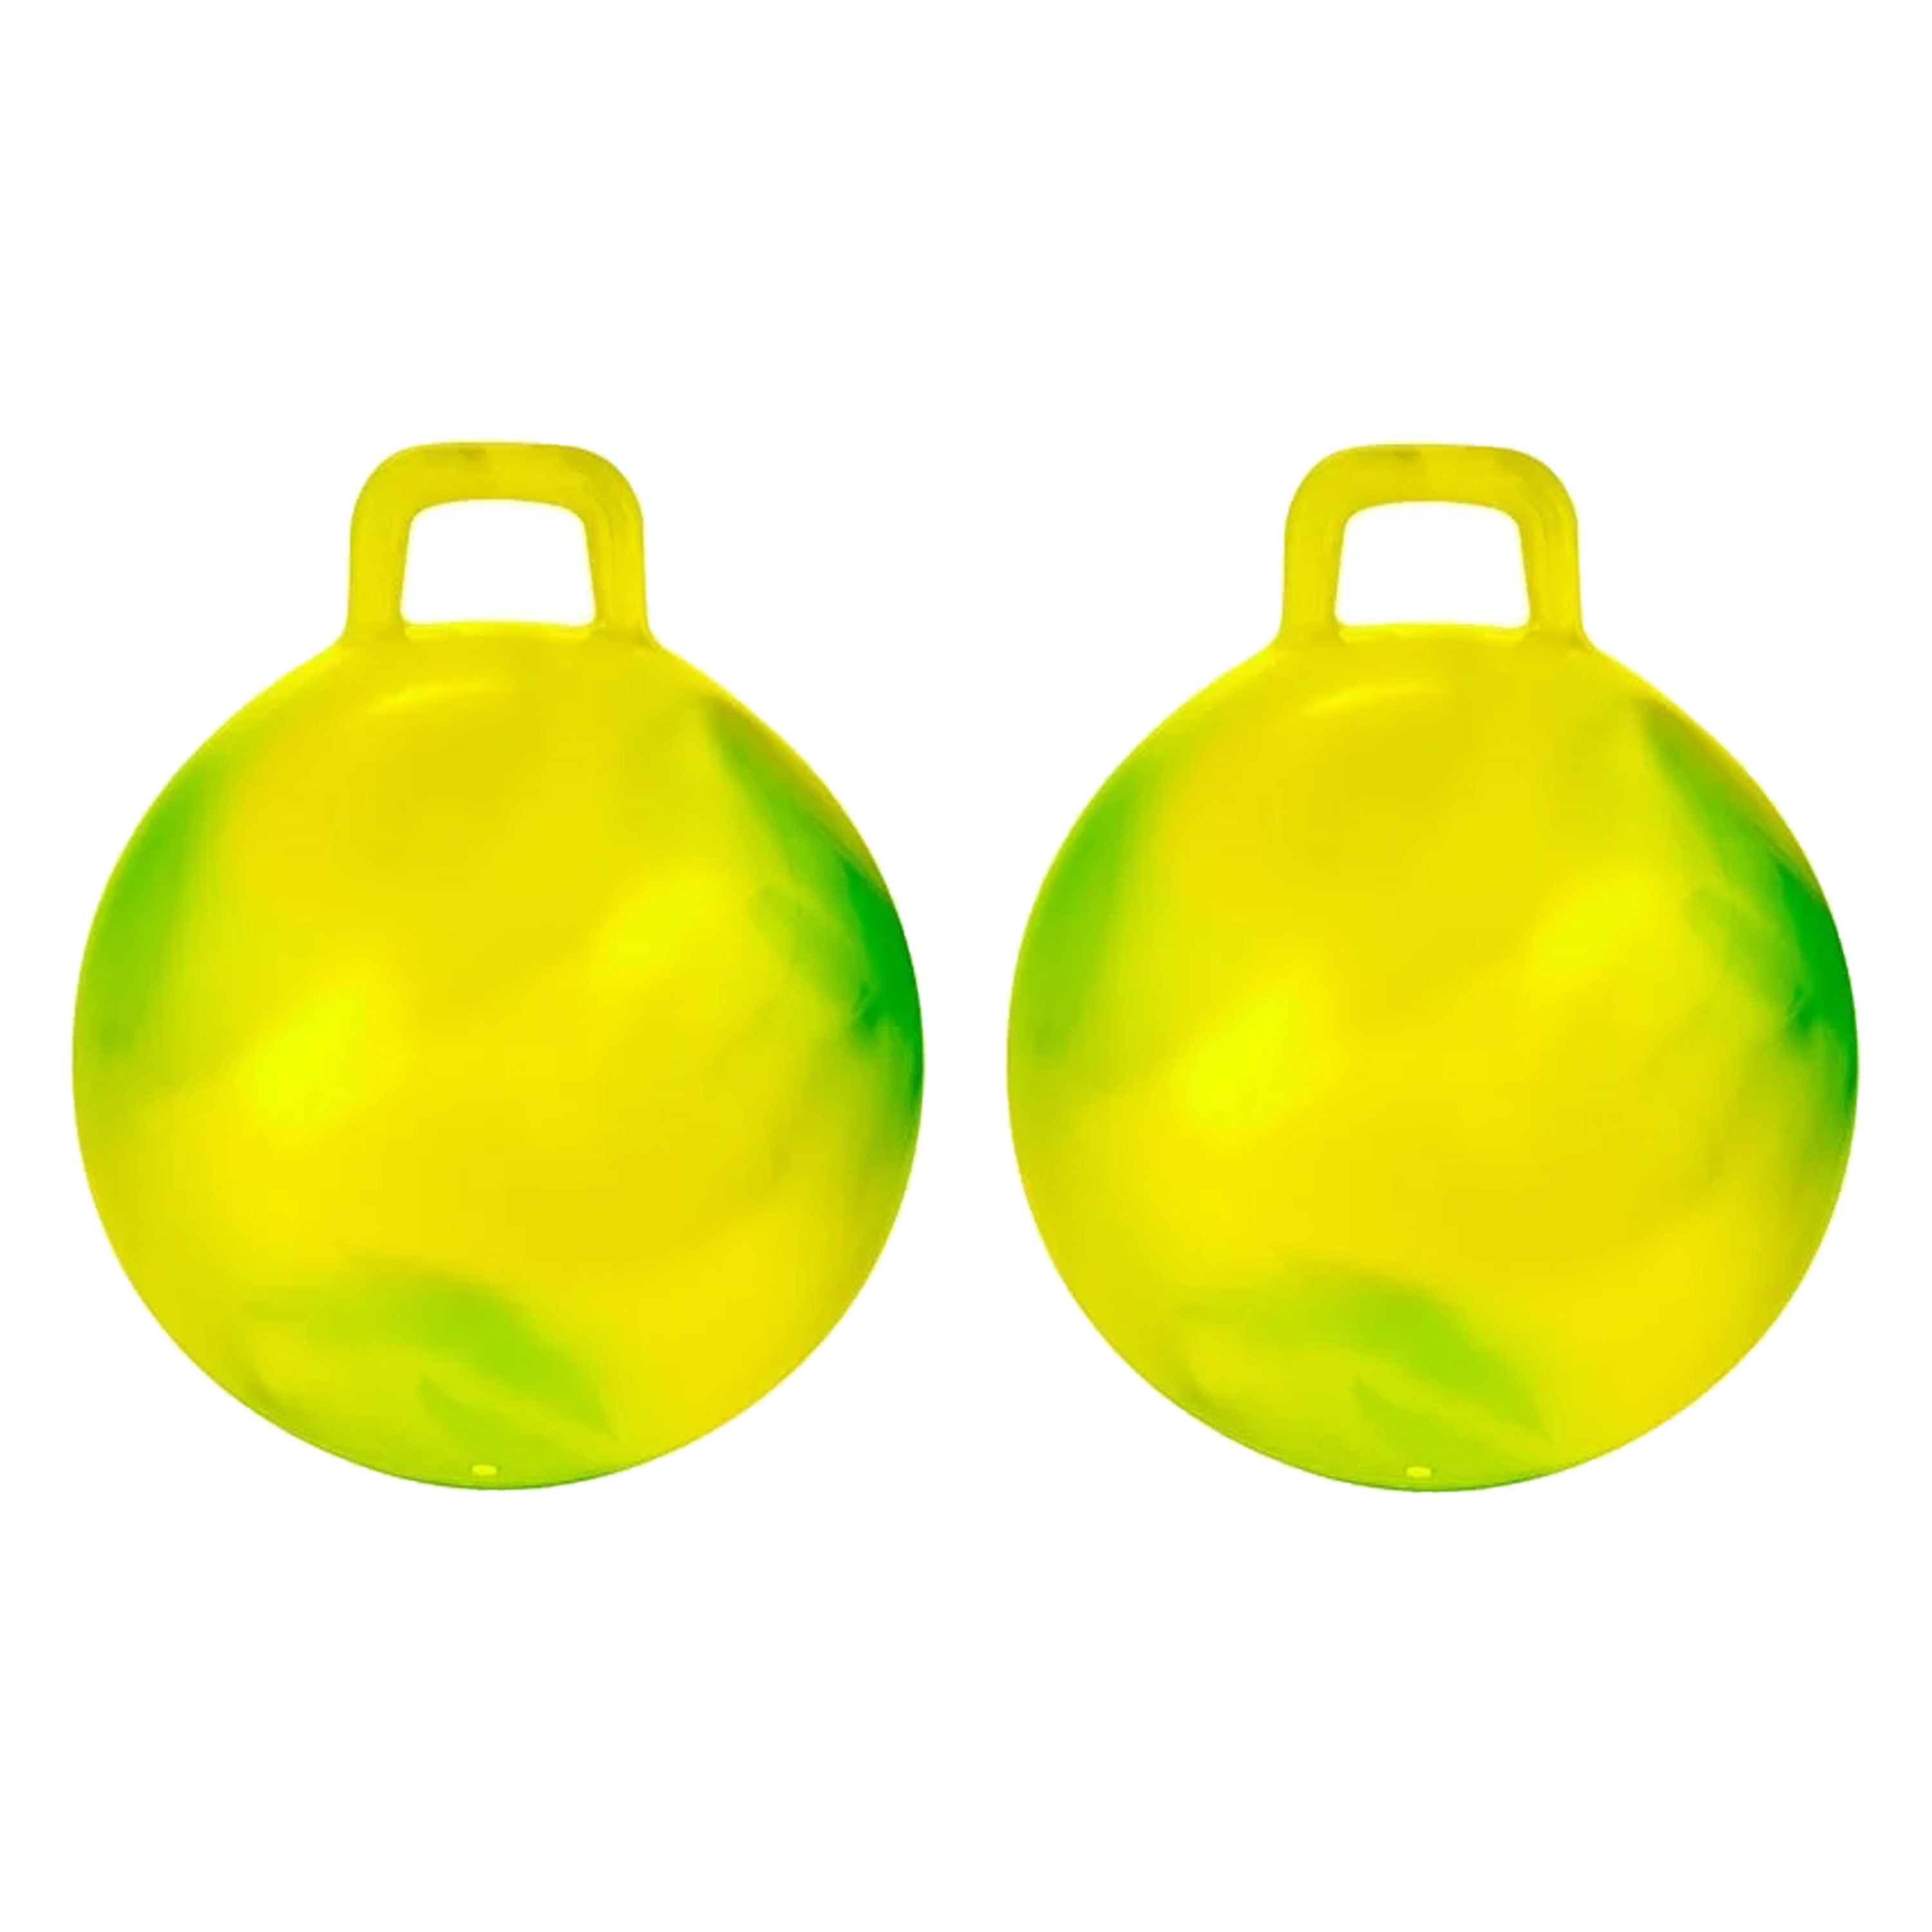 Skippybal marble - 2x - geel/groen - D45 cm - buitenspeelgoed voor kinderen -